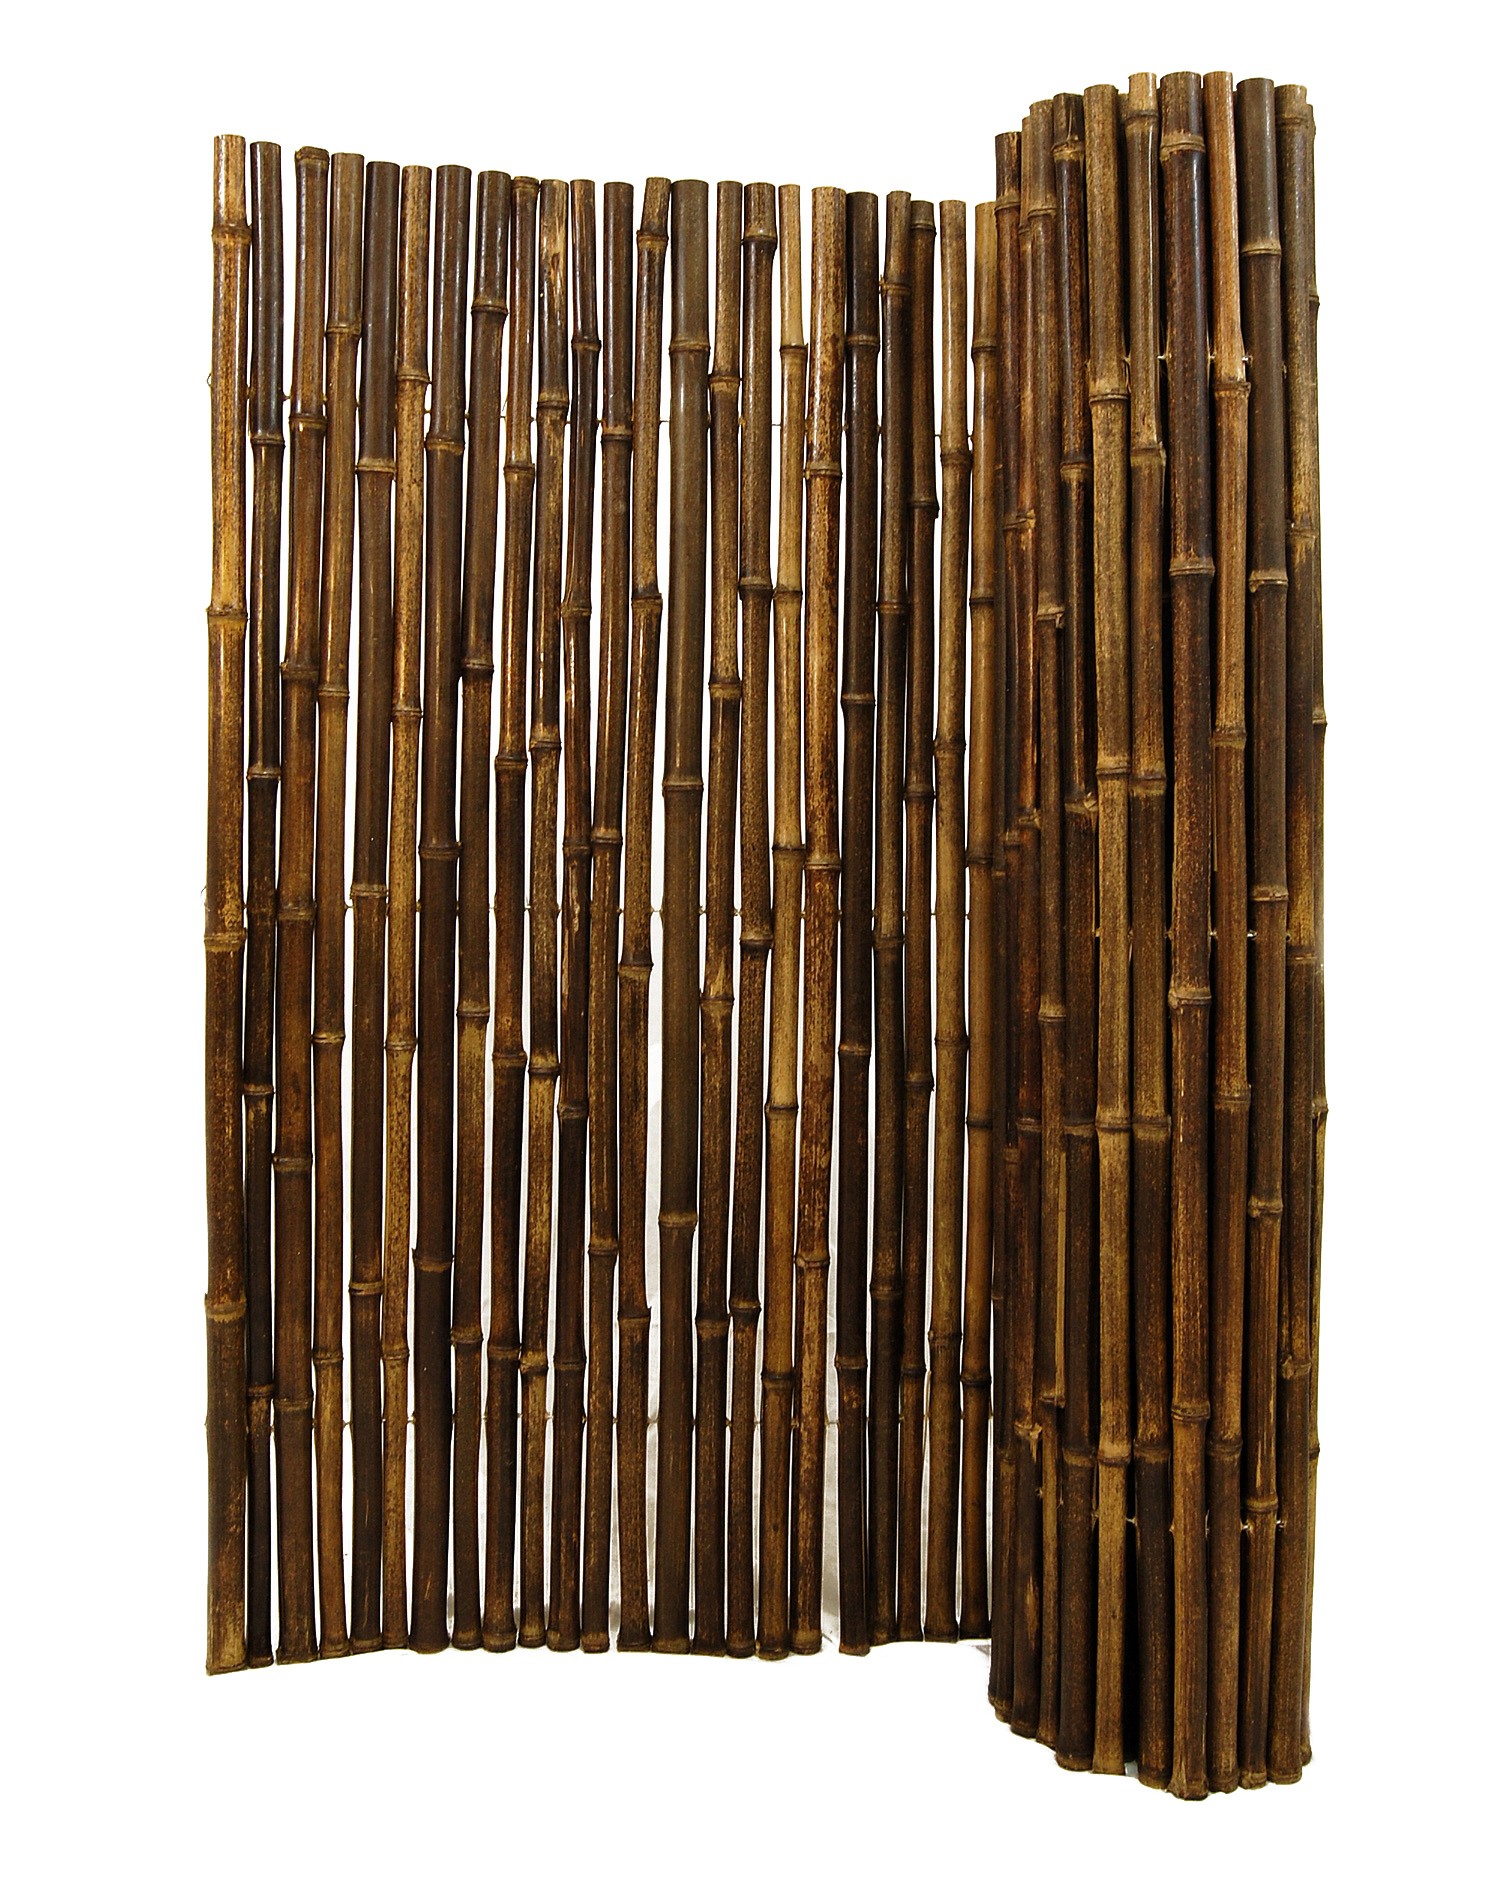 Bamboo fence photo